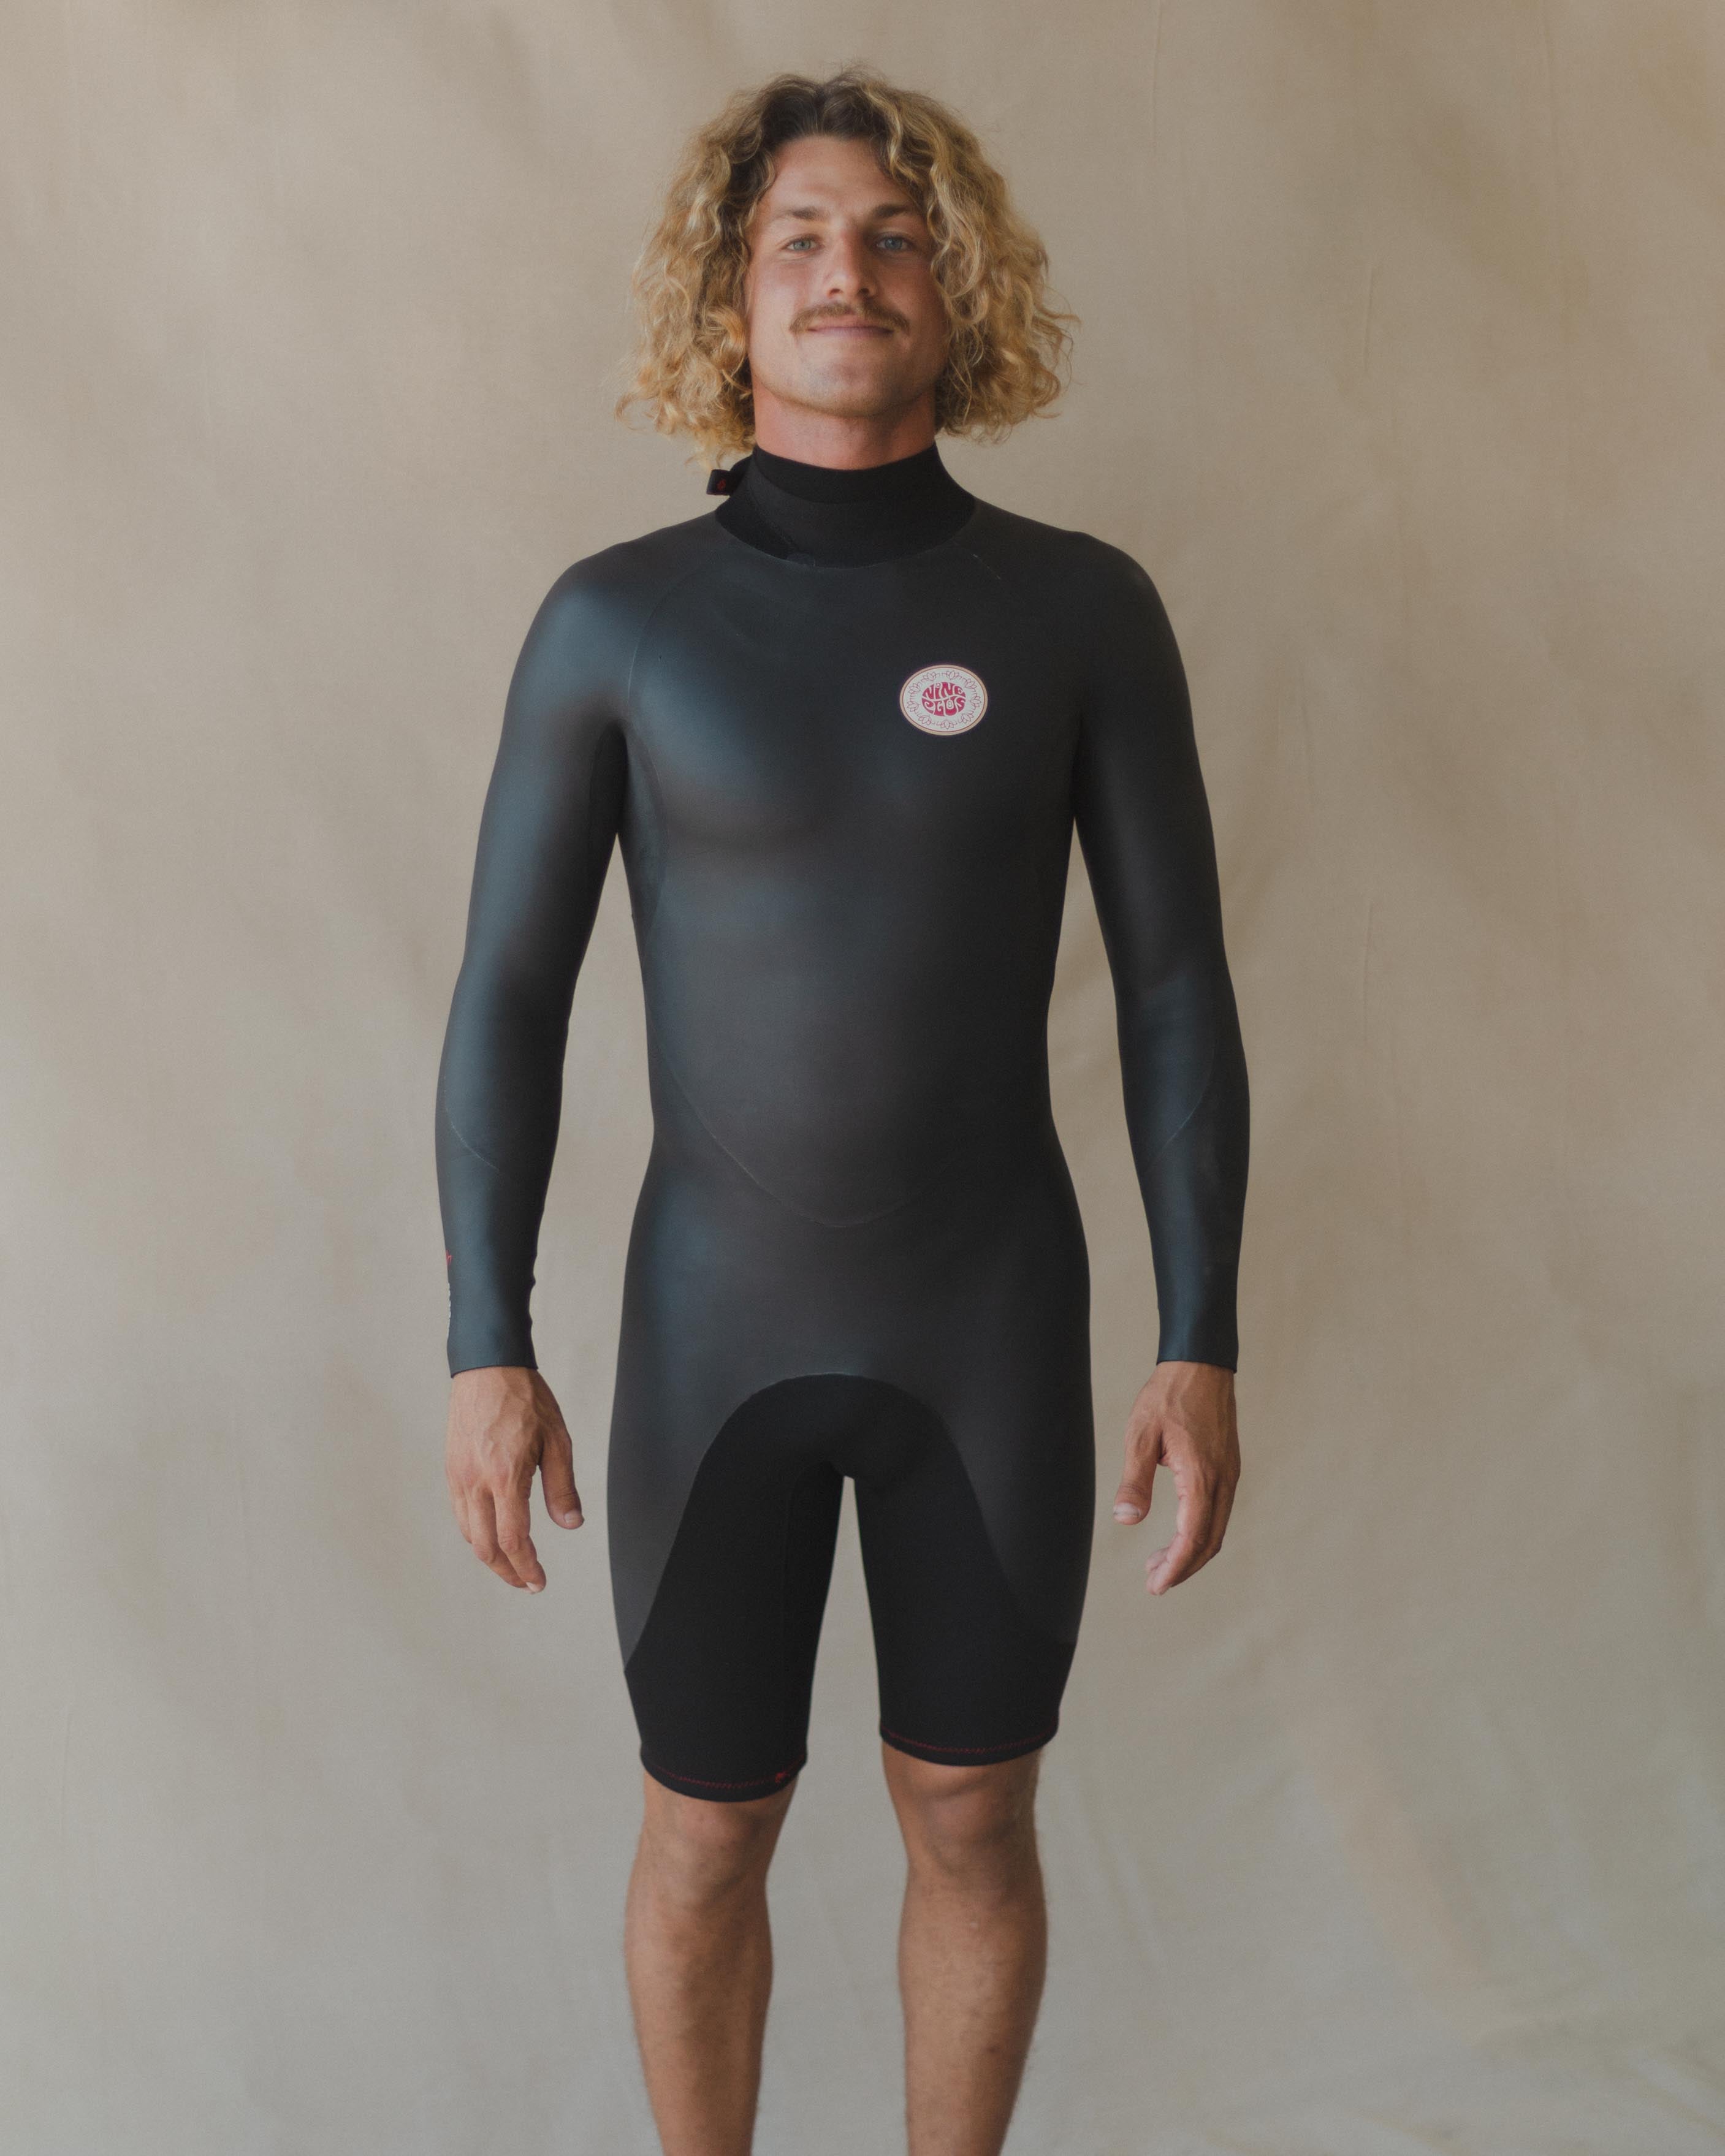 Surf Gear – Daydream Surf Shop